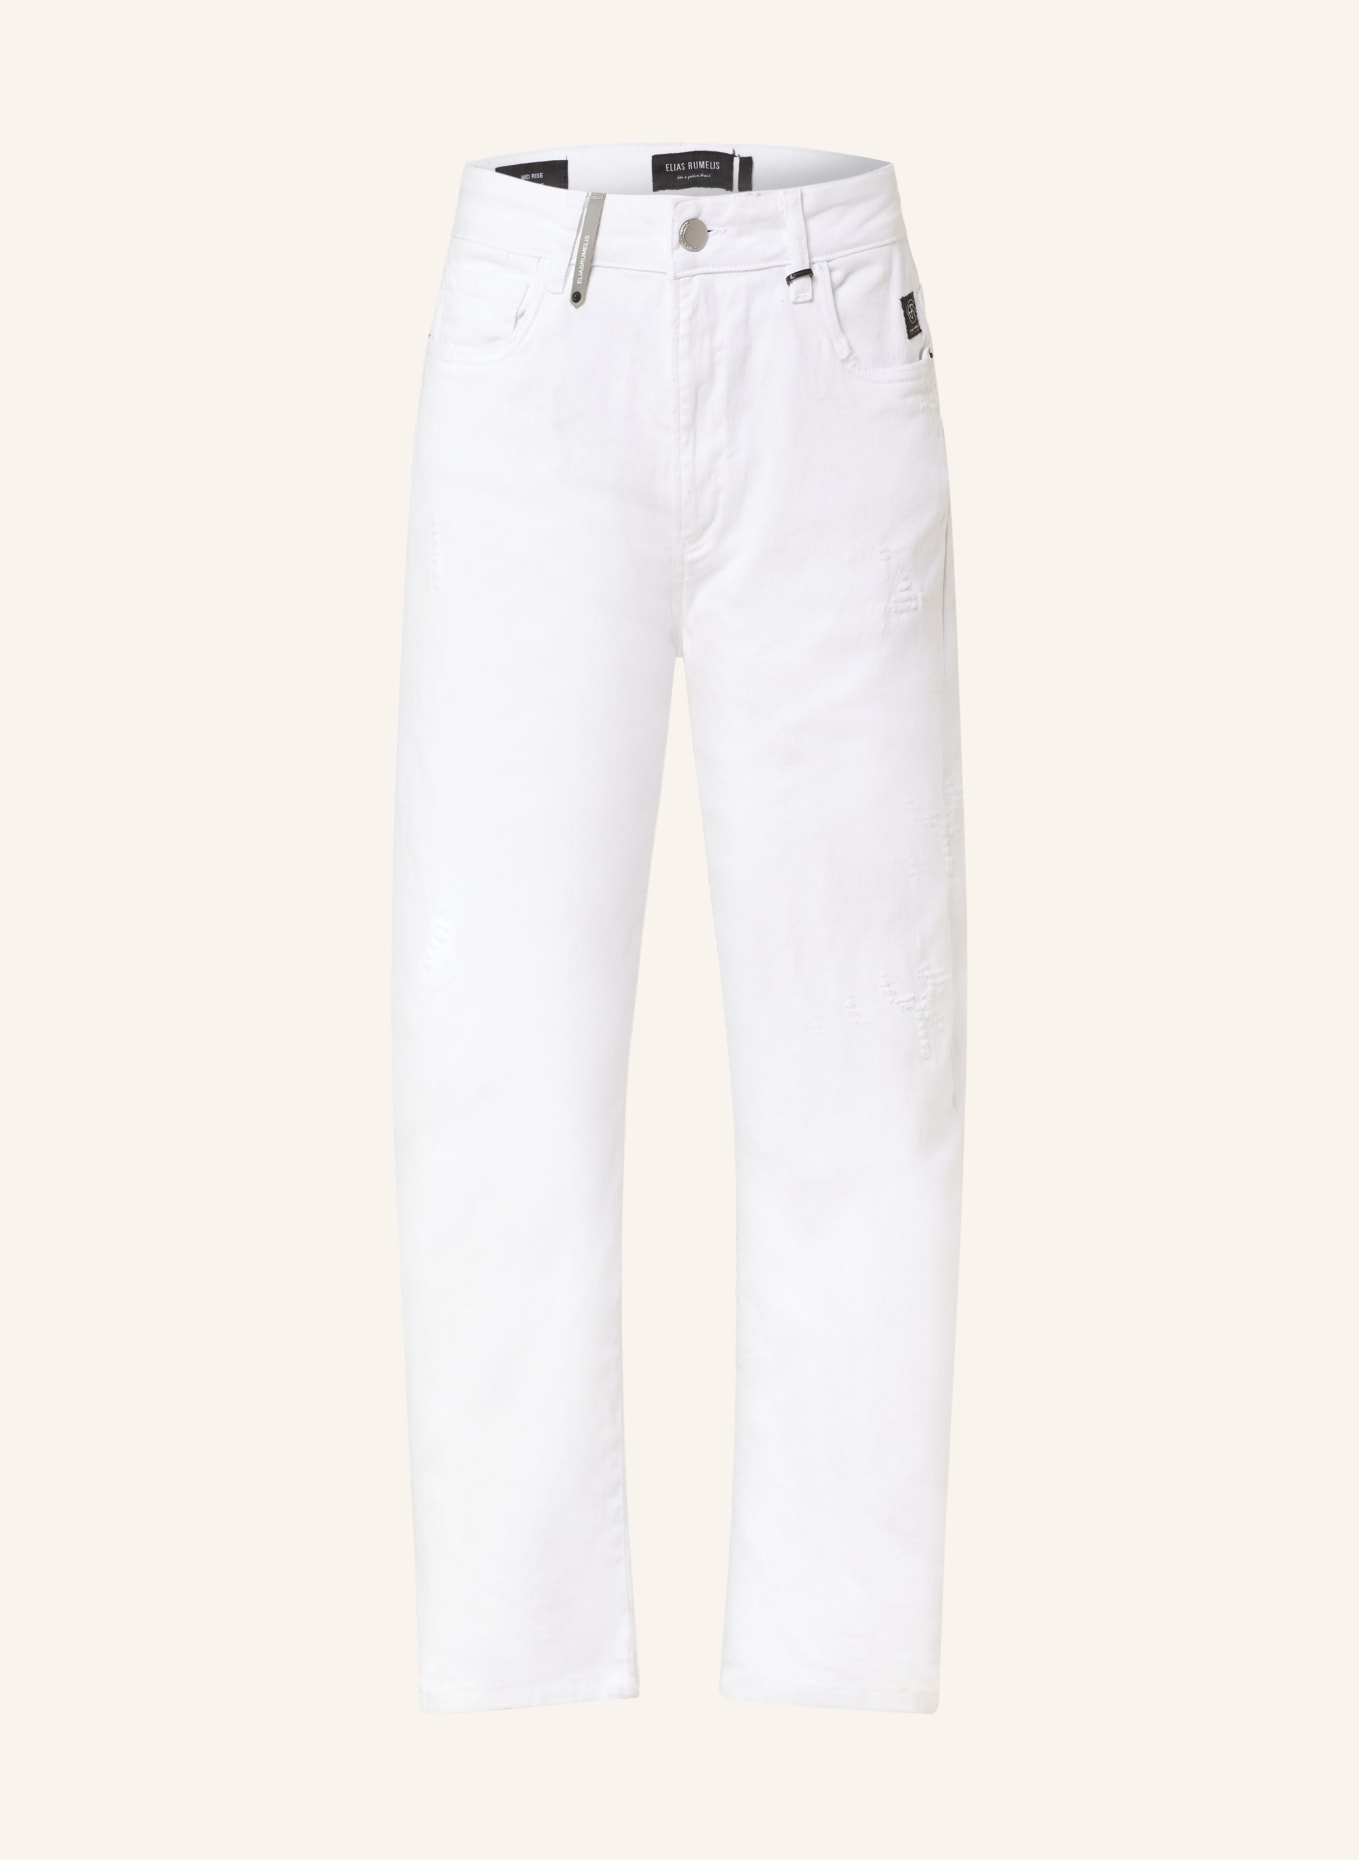 ELIAS RUMELIS Boyfriend Jeans JOANA, Farbe: 65 WHITE (Bild 1)